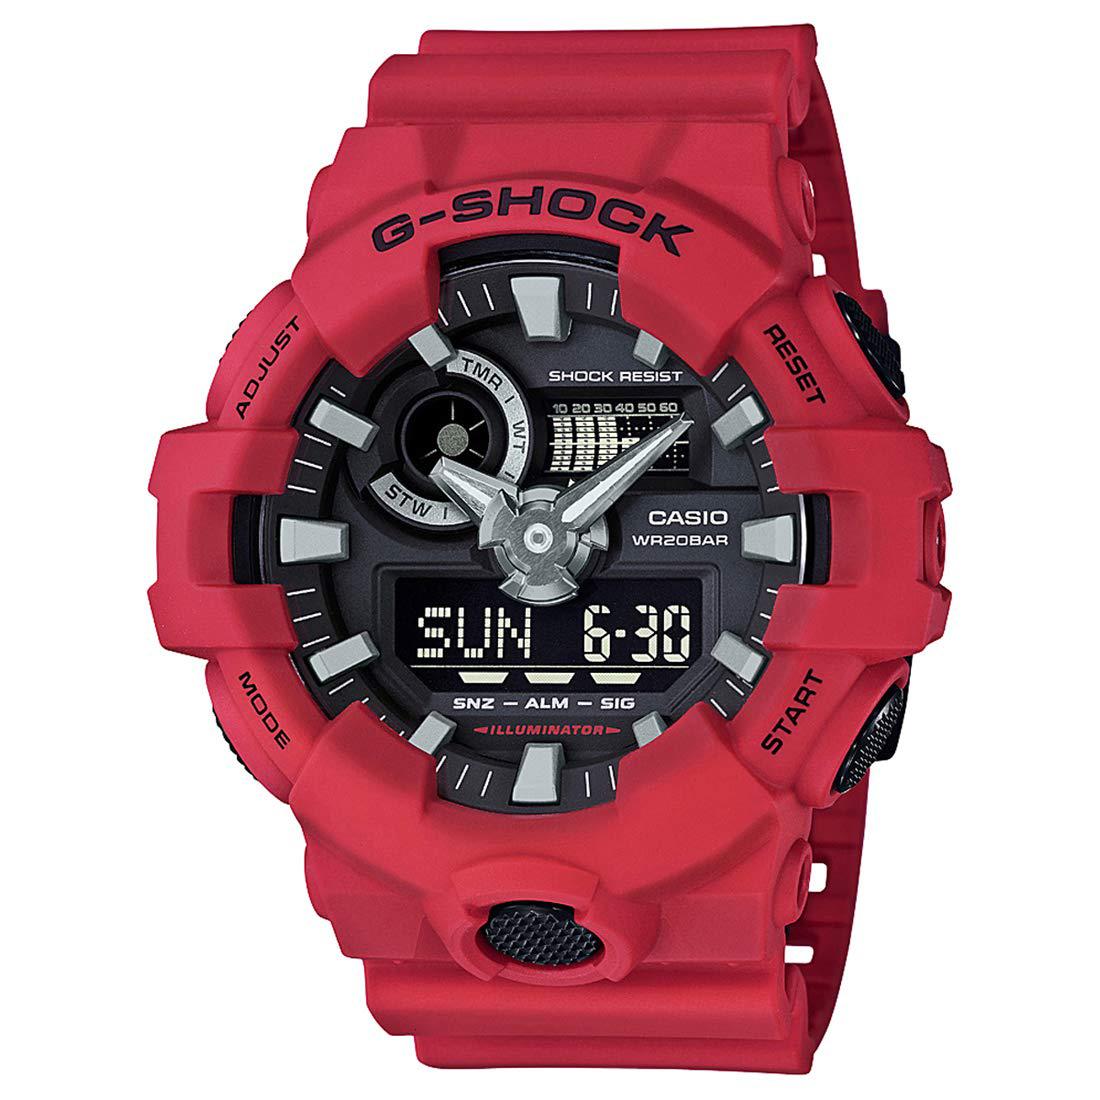 ساعت مچی مردانه G-Shock کاسیو با کد GA-700-4ADR